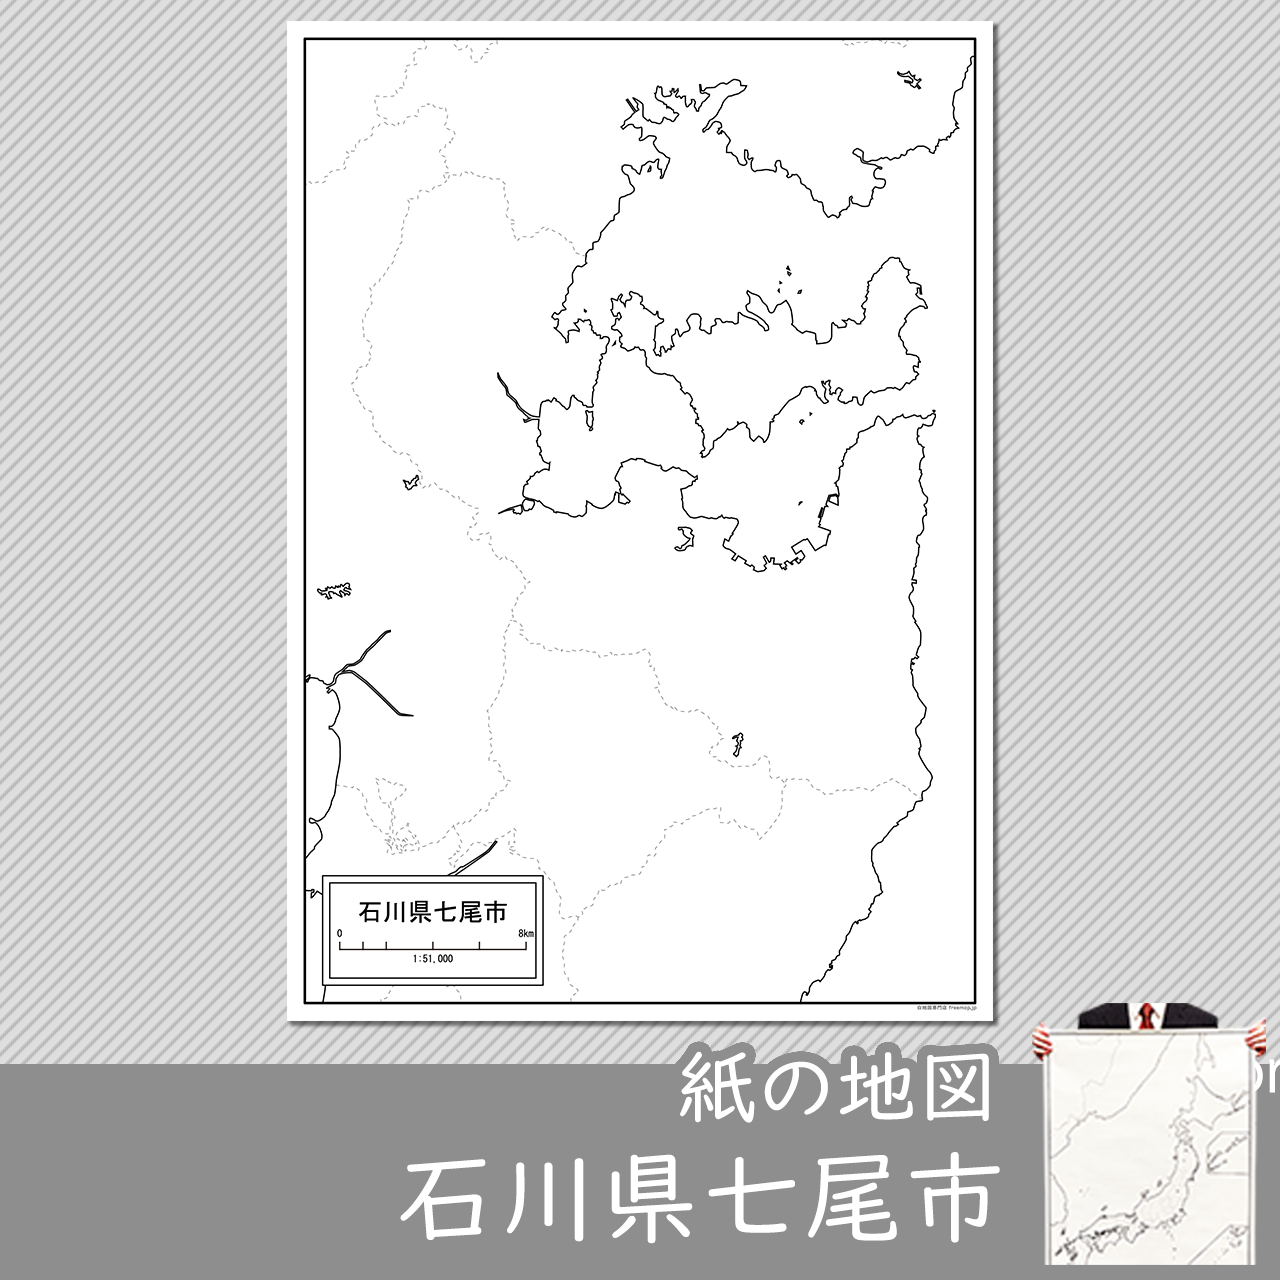 七尾市の紙の白地図のサムネイル